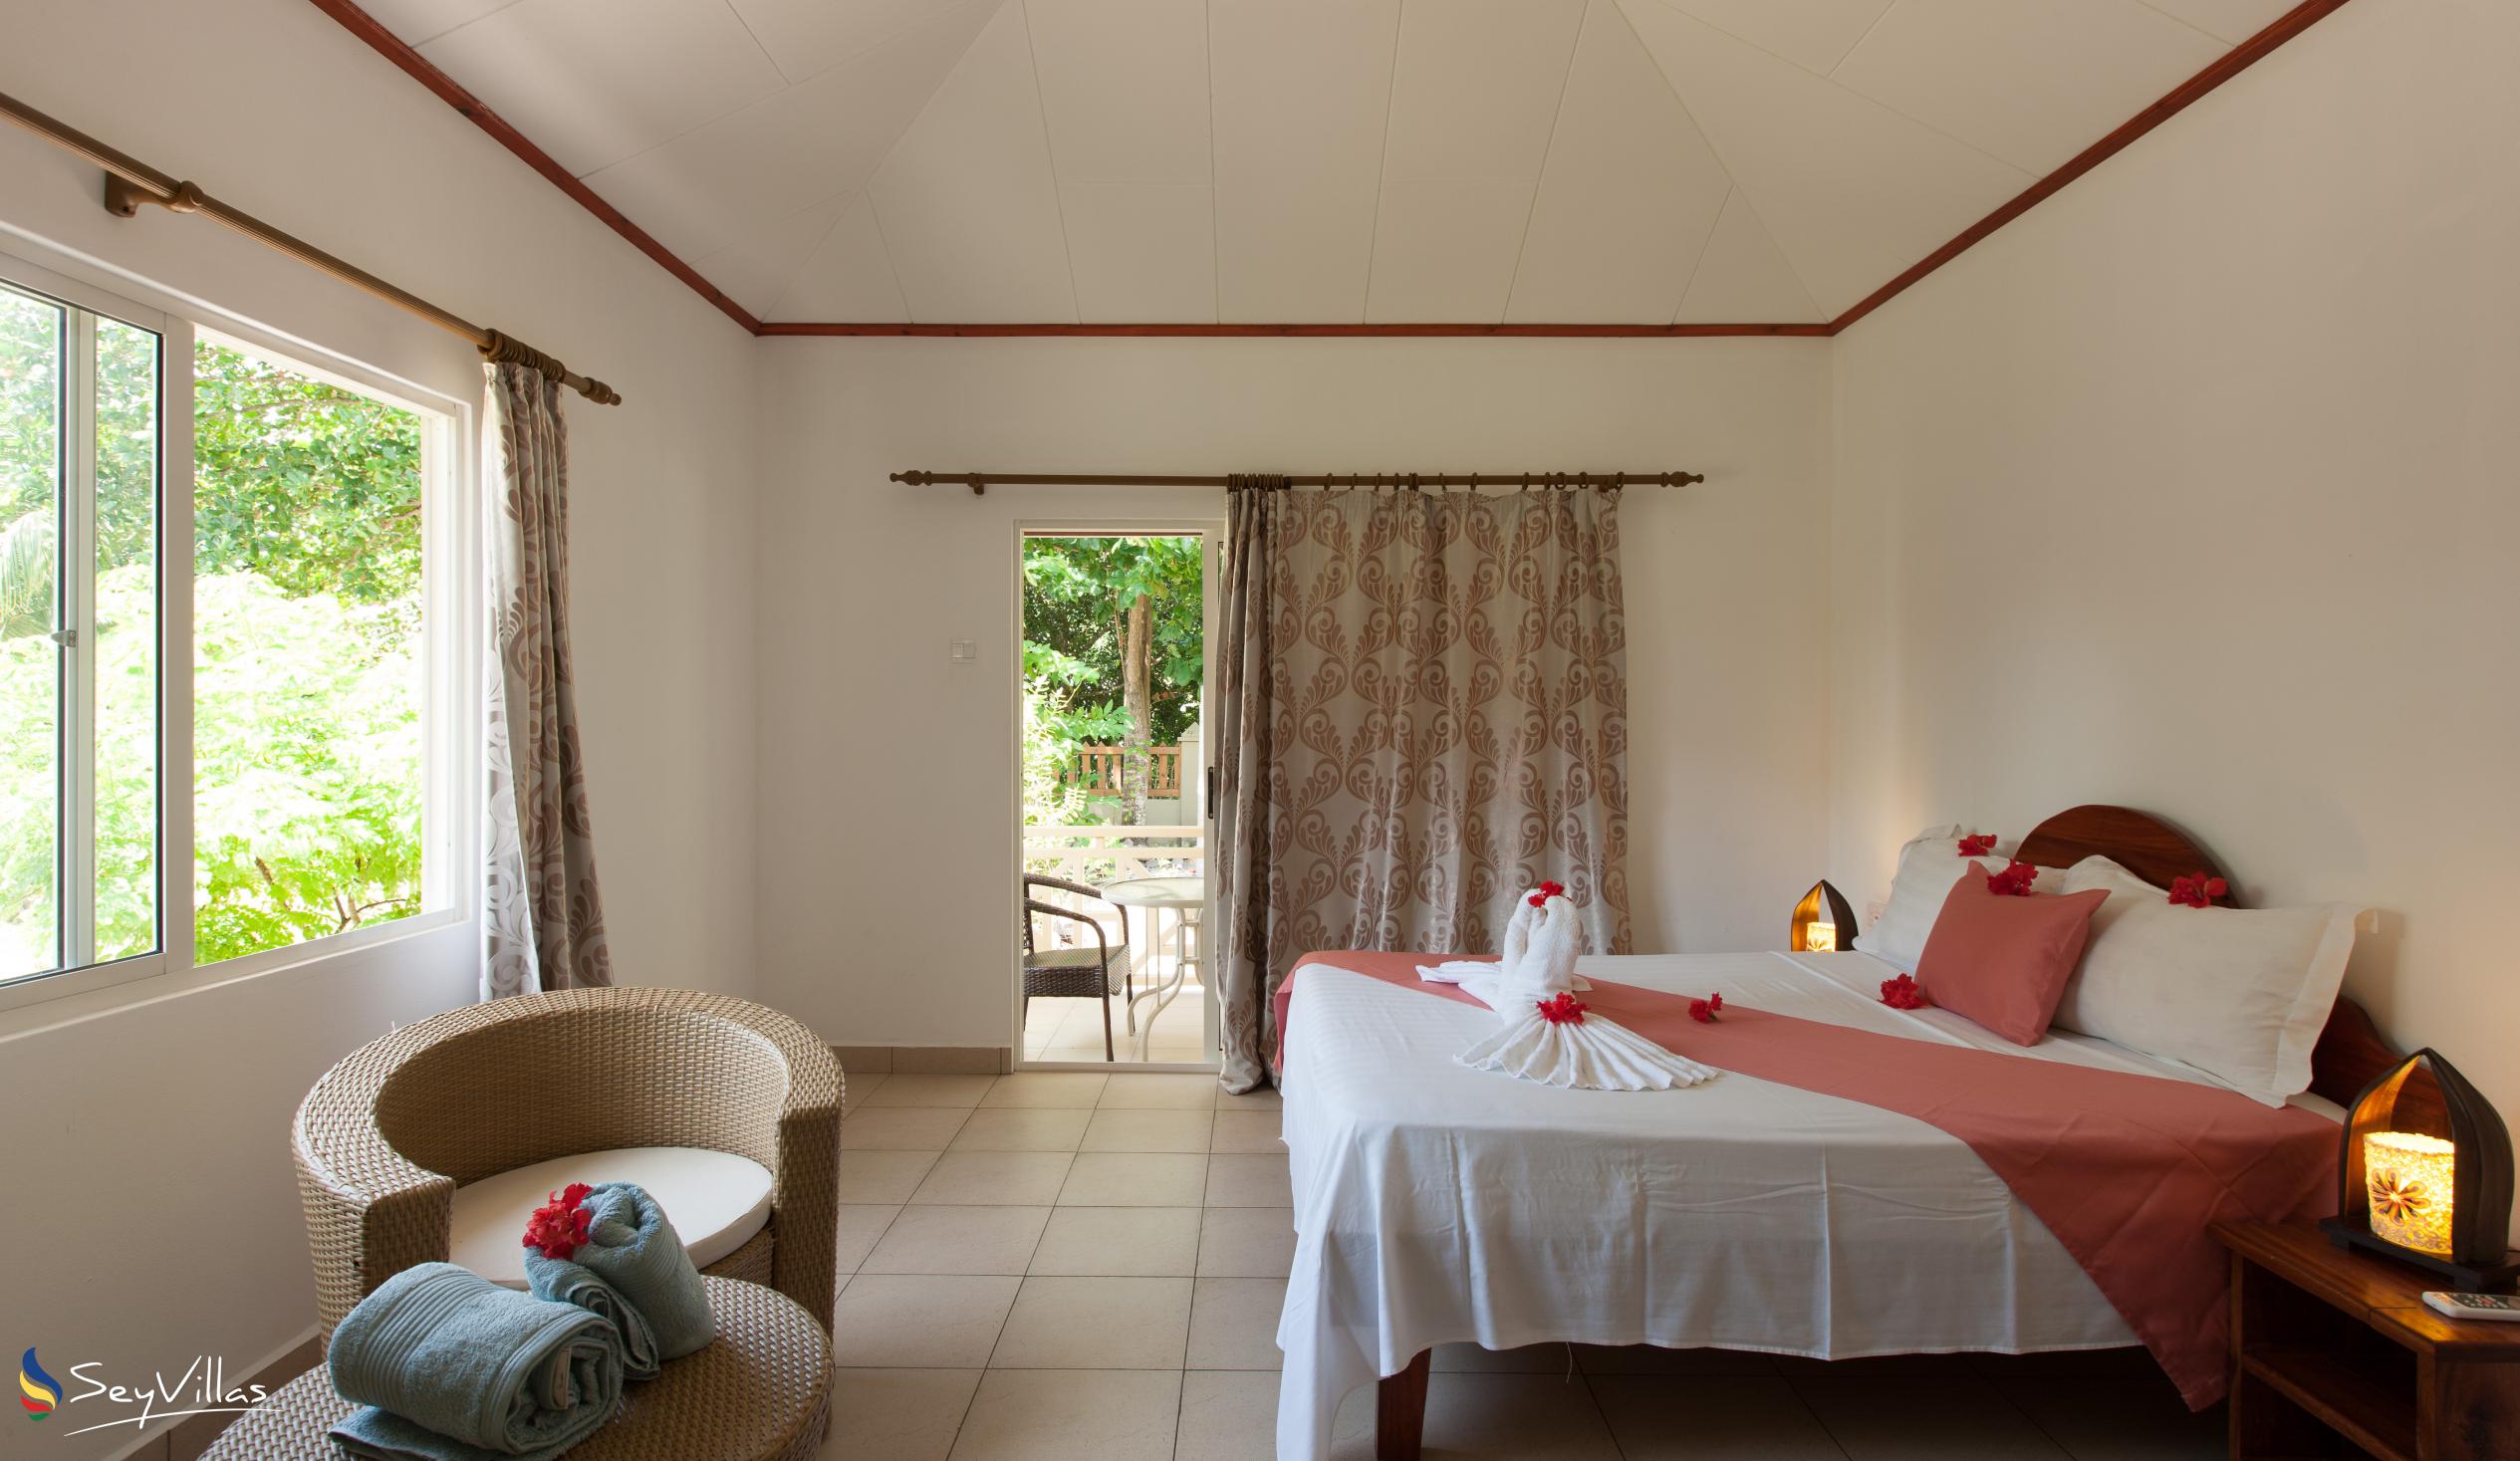 Foto 4: Hostellerie La Digue - Chalet mit 3 Schlafzimmern - La Digue (Seychellen)